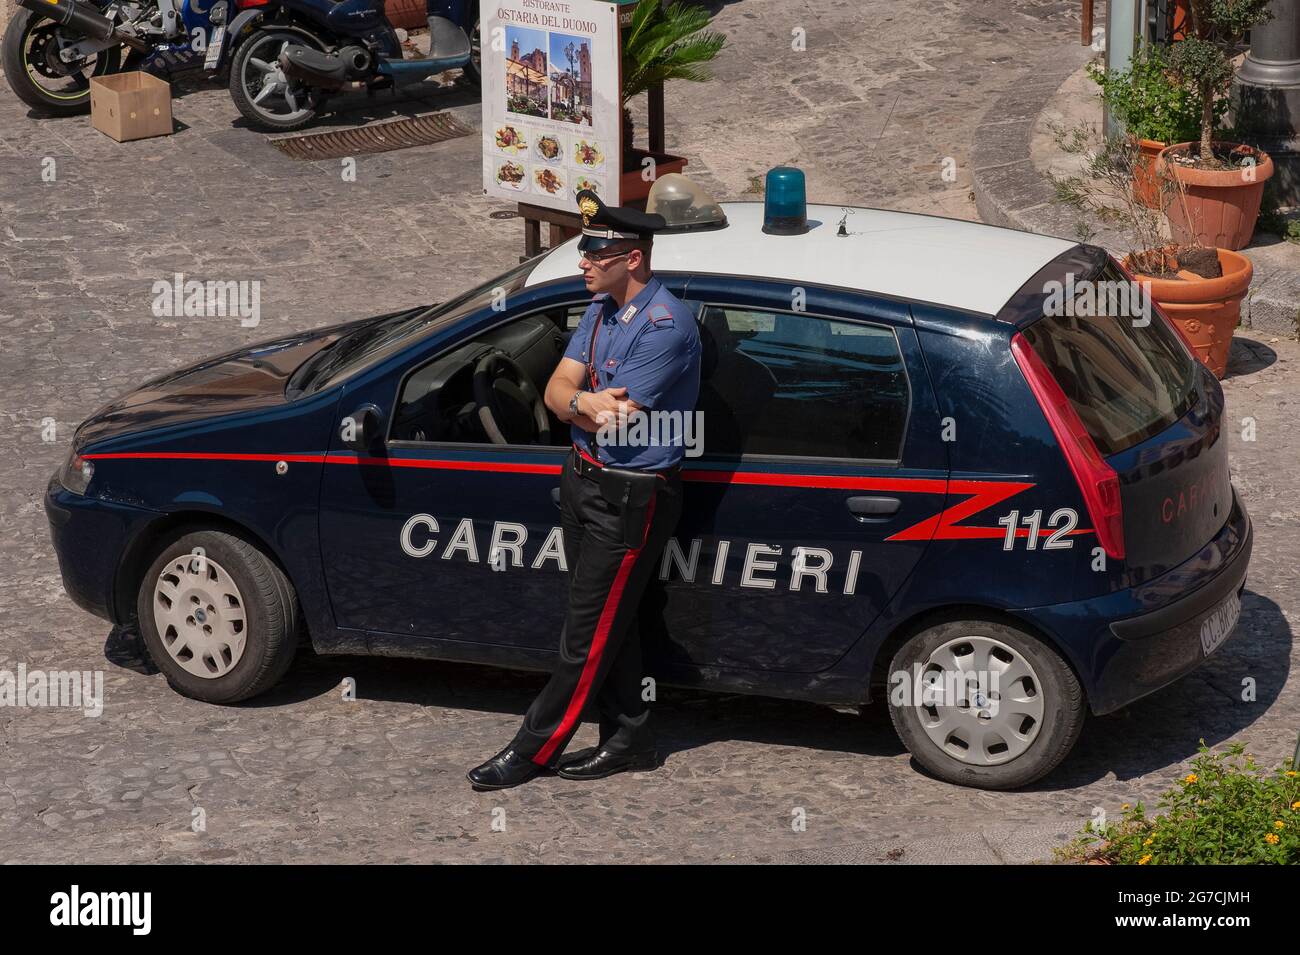 Un giovane Carabiniere, ufficiale armato della polizia militare italiana  arma dei carabinieri, si appoggia contro la sua pattuglia Fiat con le armi  piegate, mentre tiene un occhio vigile sui turisti che camminano